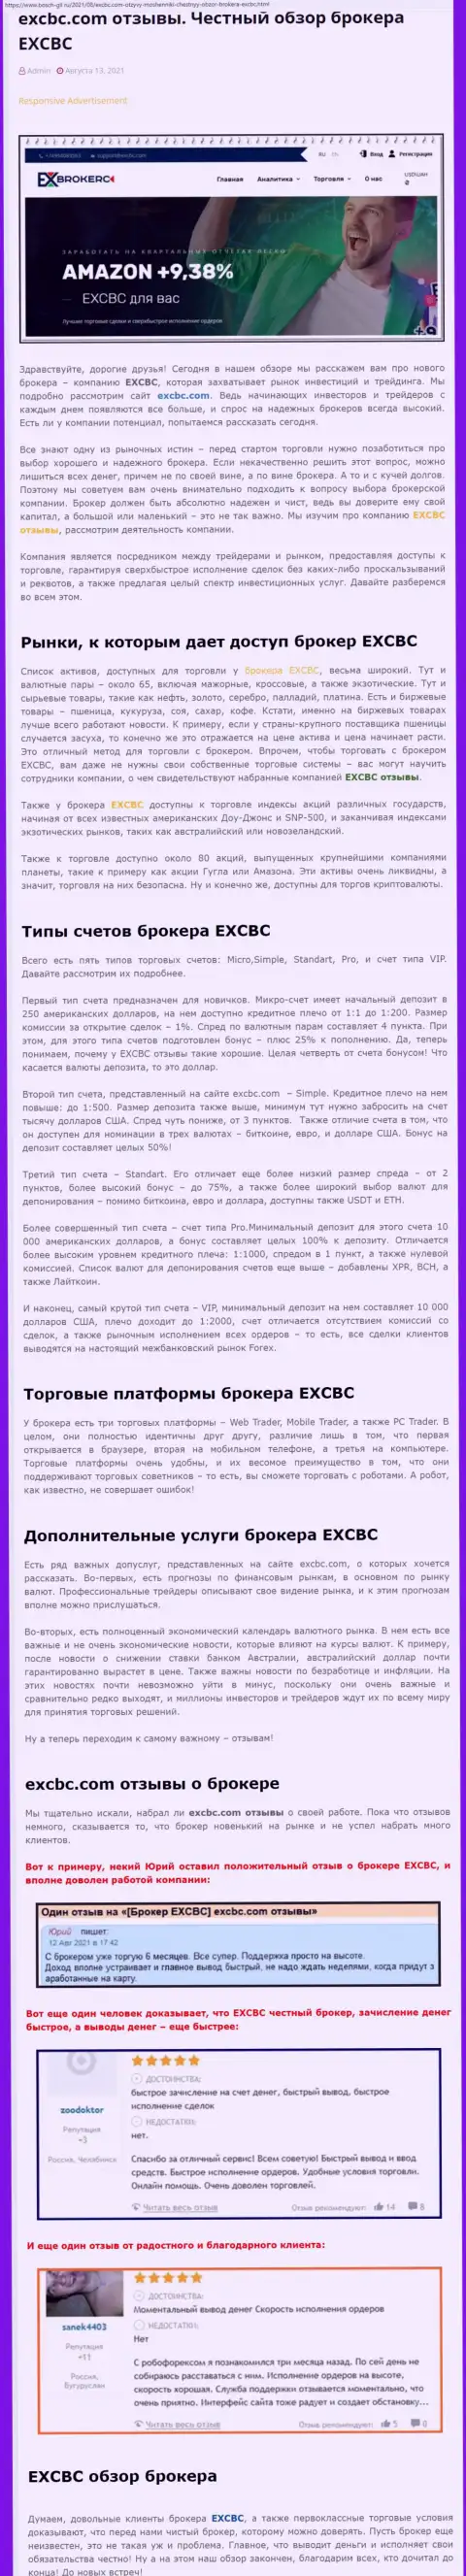 Обзорный материал об форекс-компании EXCBC на web-портале бош-глл ру